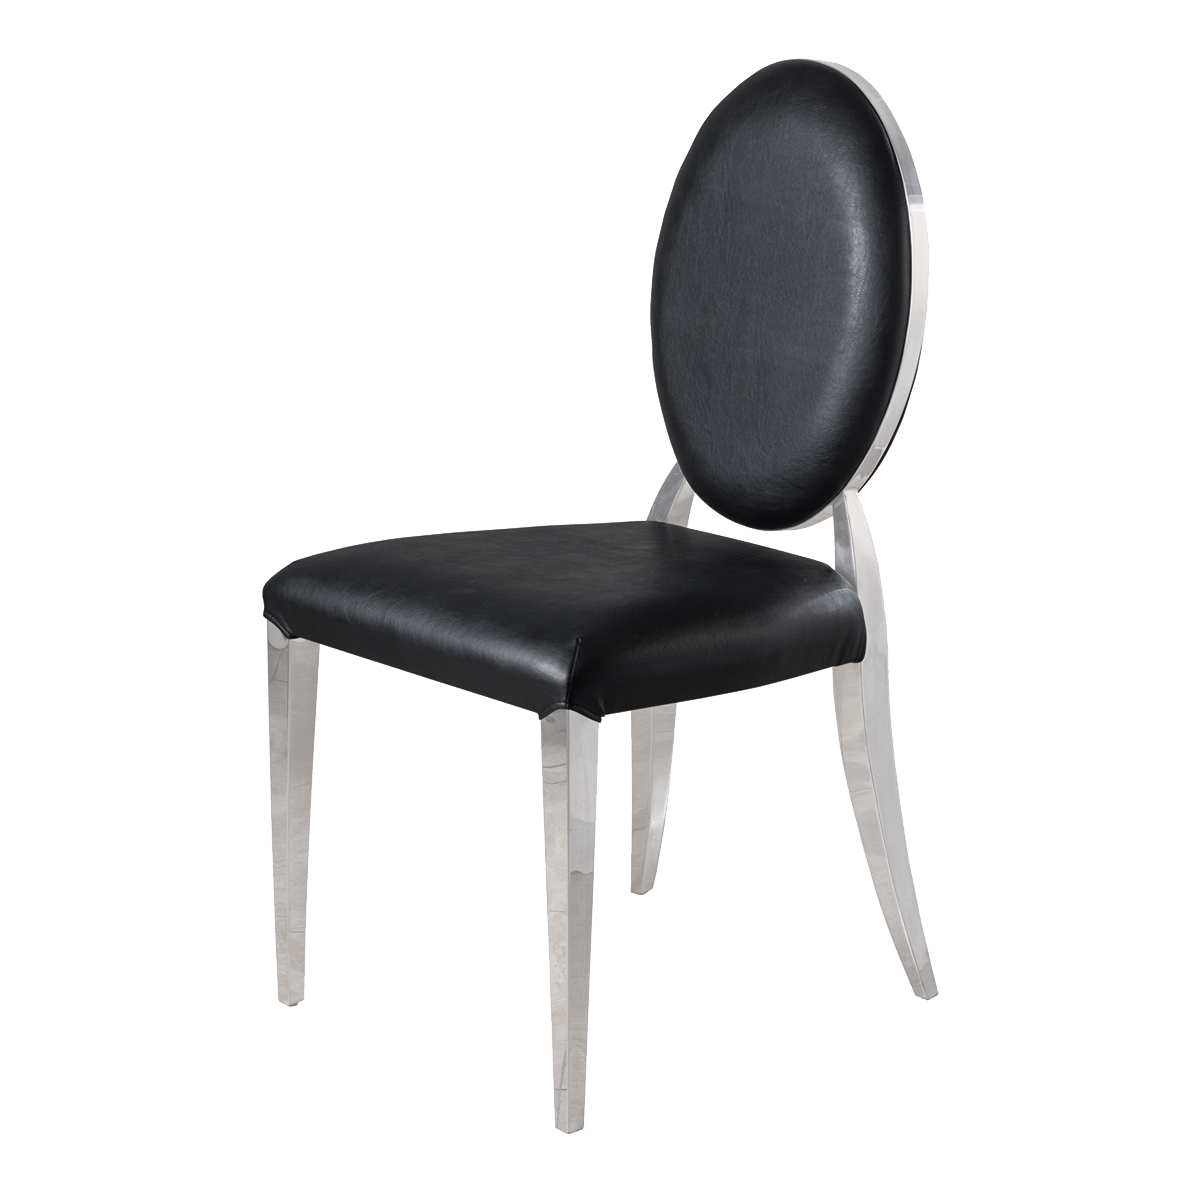 Whale Spa Black Waiting Chair 8030 Nail Salon Customer Chair | Salon and Spa Furniture